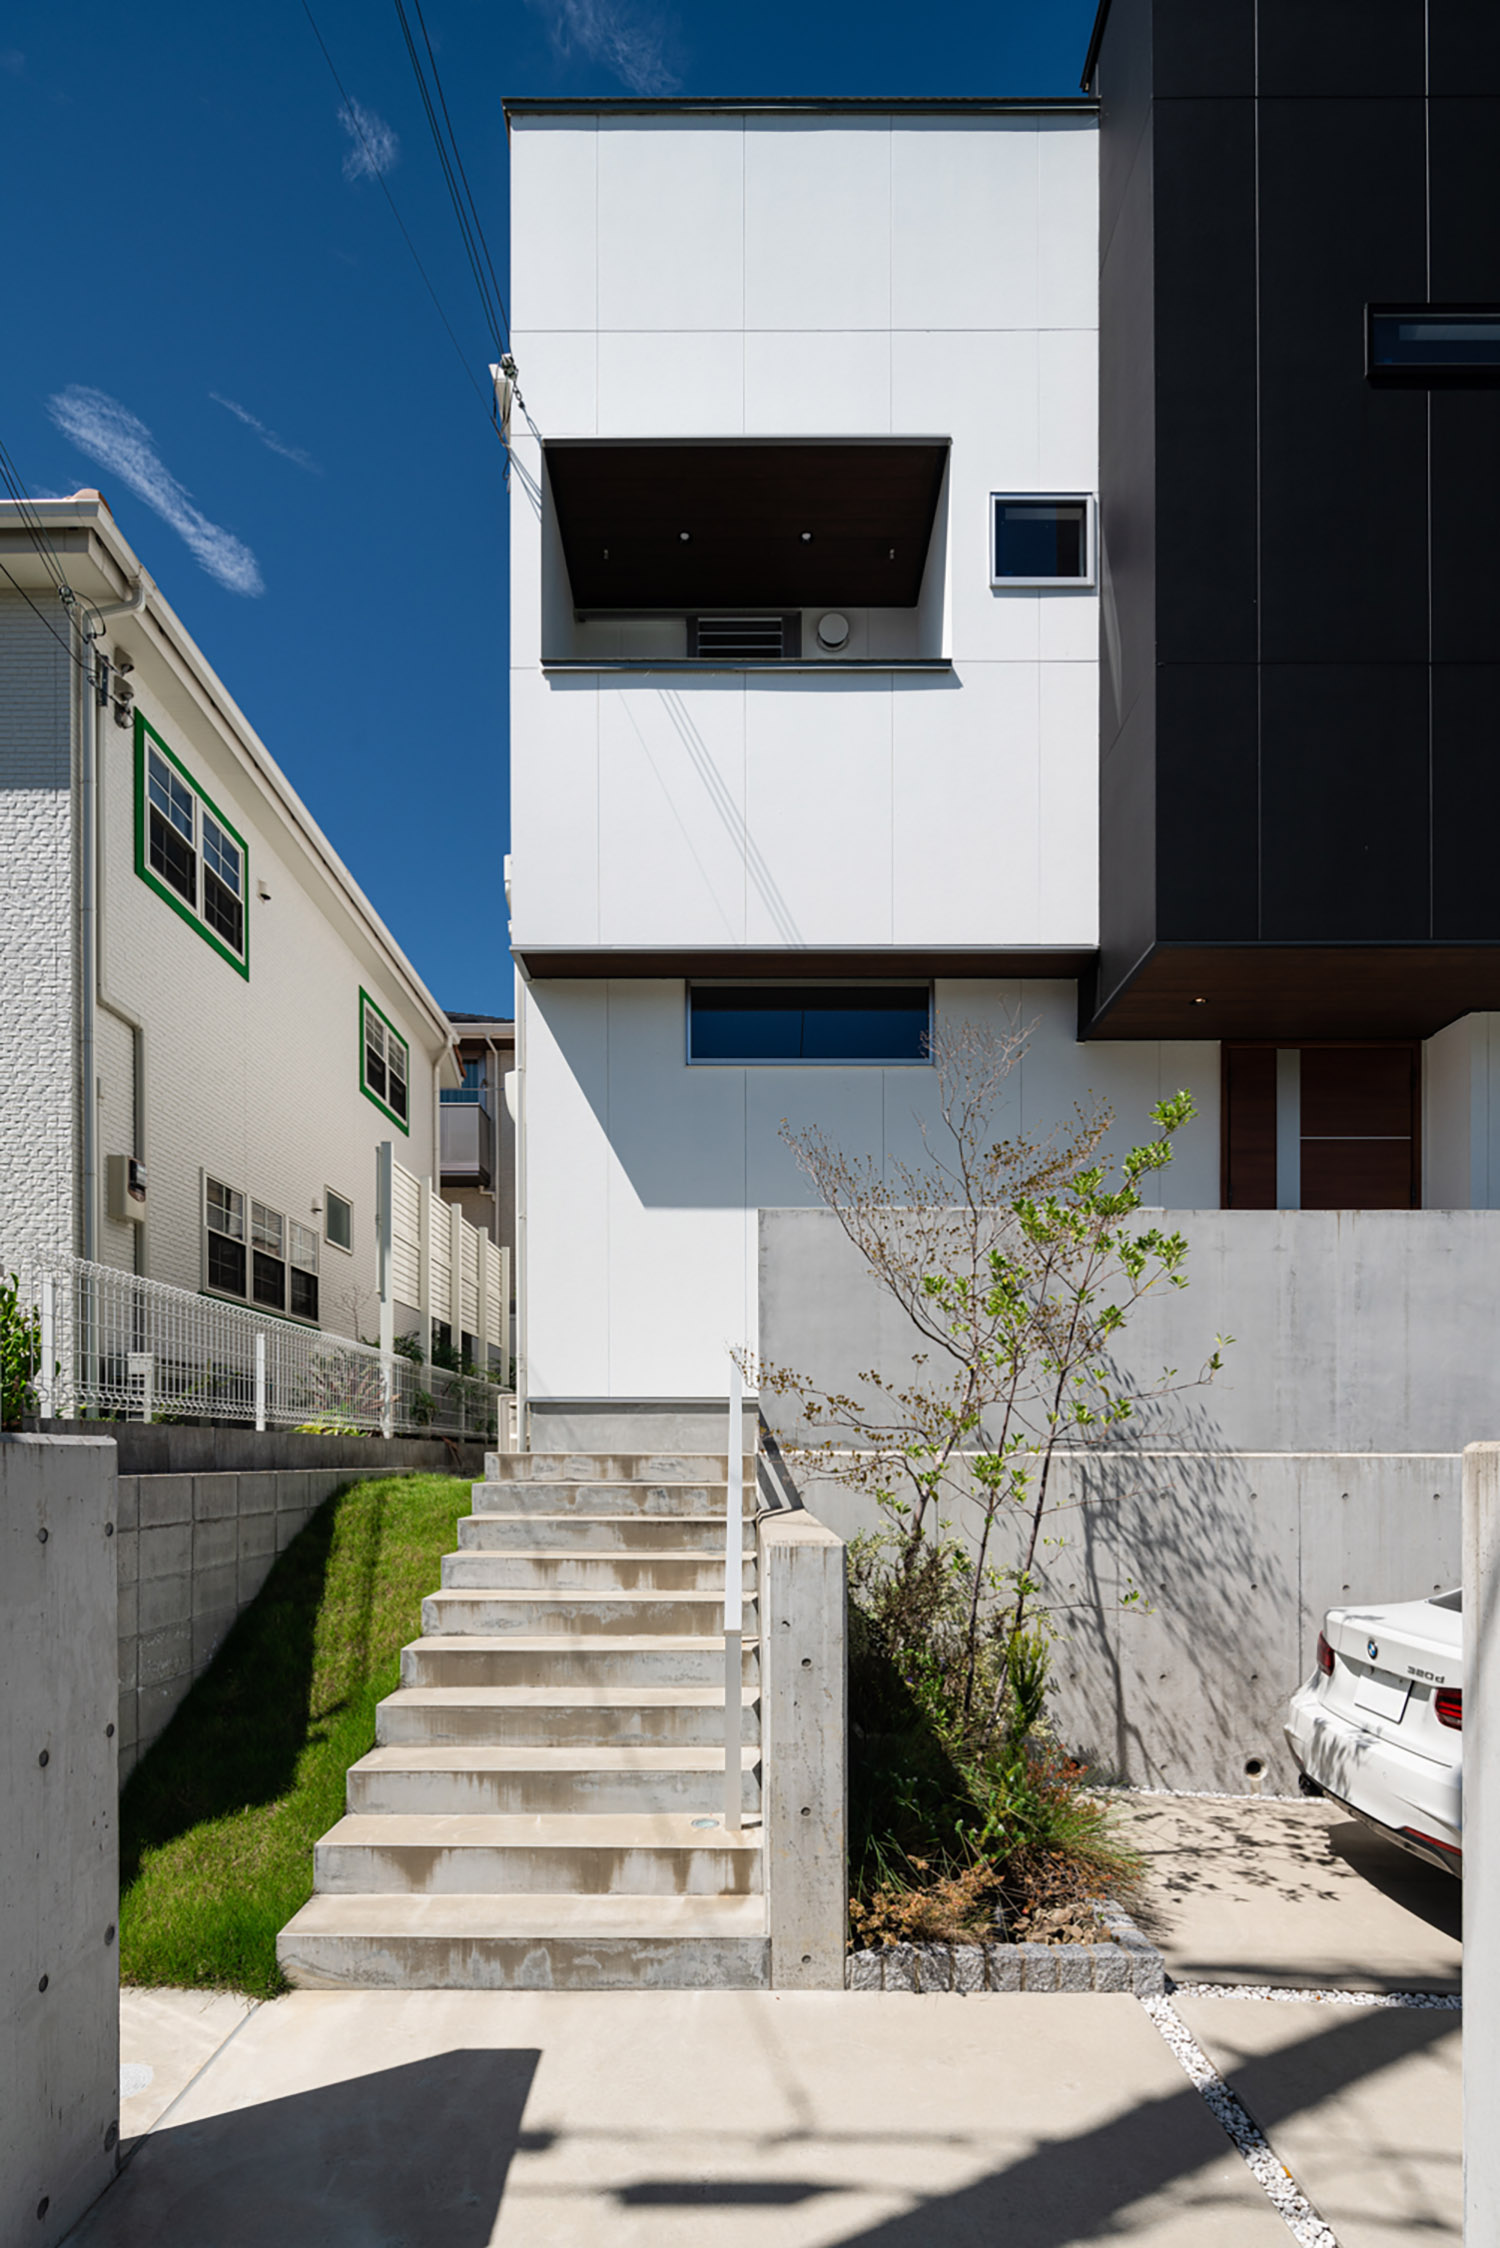 コンクリートの階段アプローチがある白と黒の外壁の住宅・デザイン住宅